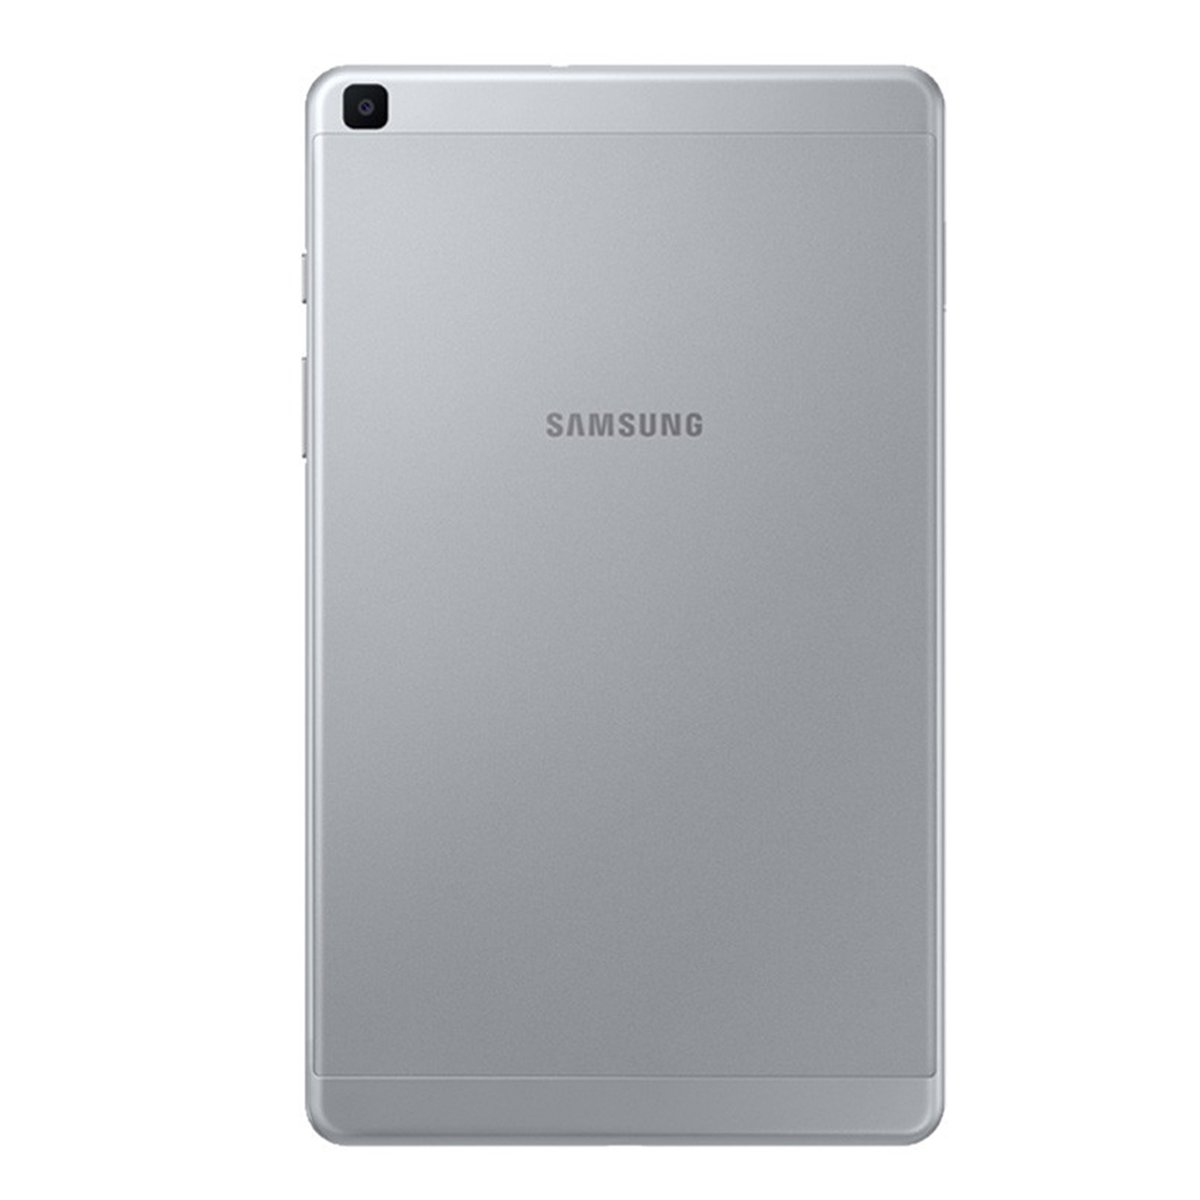 Samsung Galaxy Tab A 8 (2019) T290 8" WiFi 32GB Silver